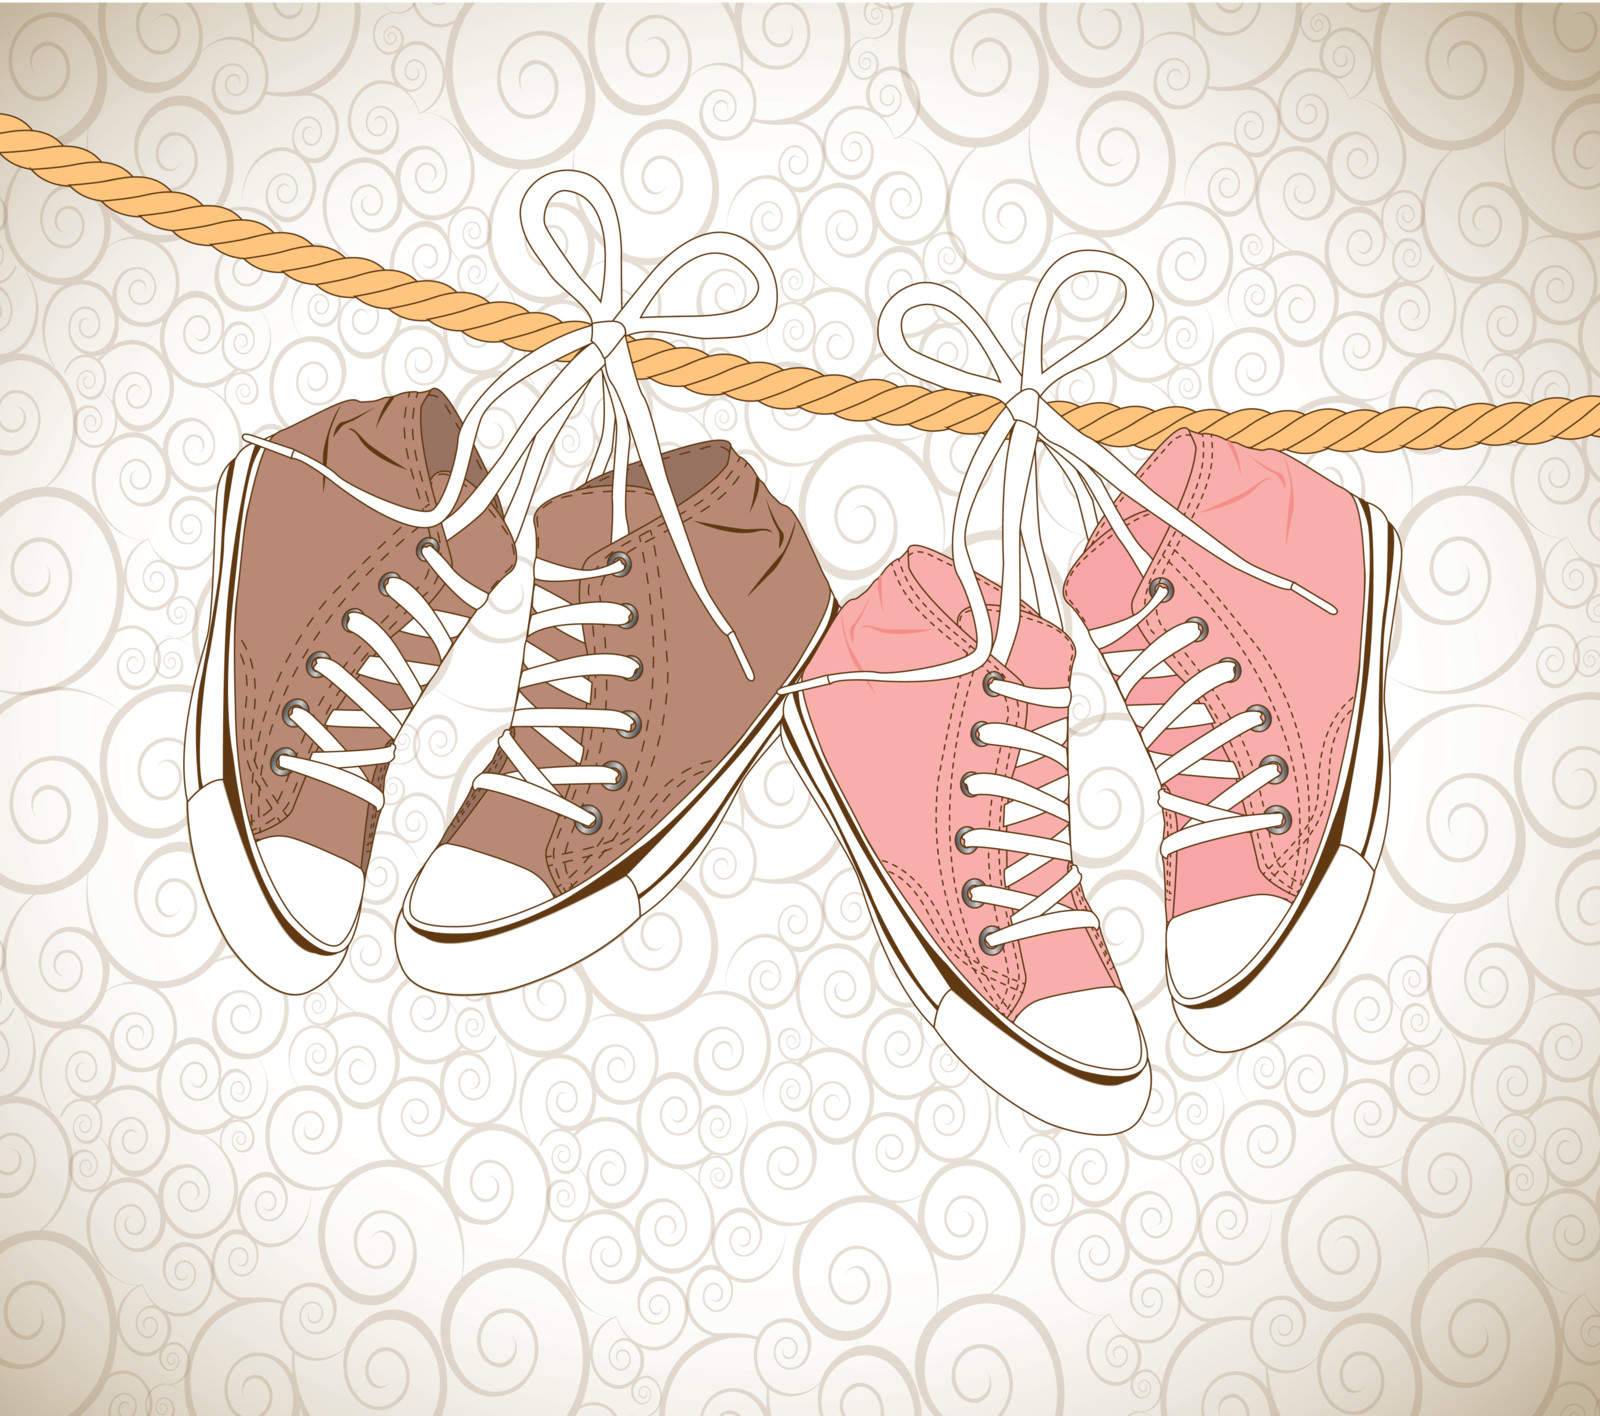 old shoes over vintage background vector illustration